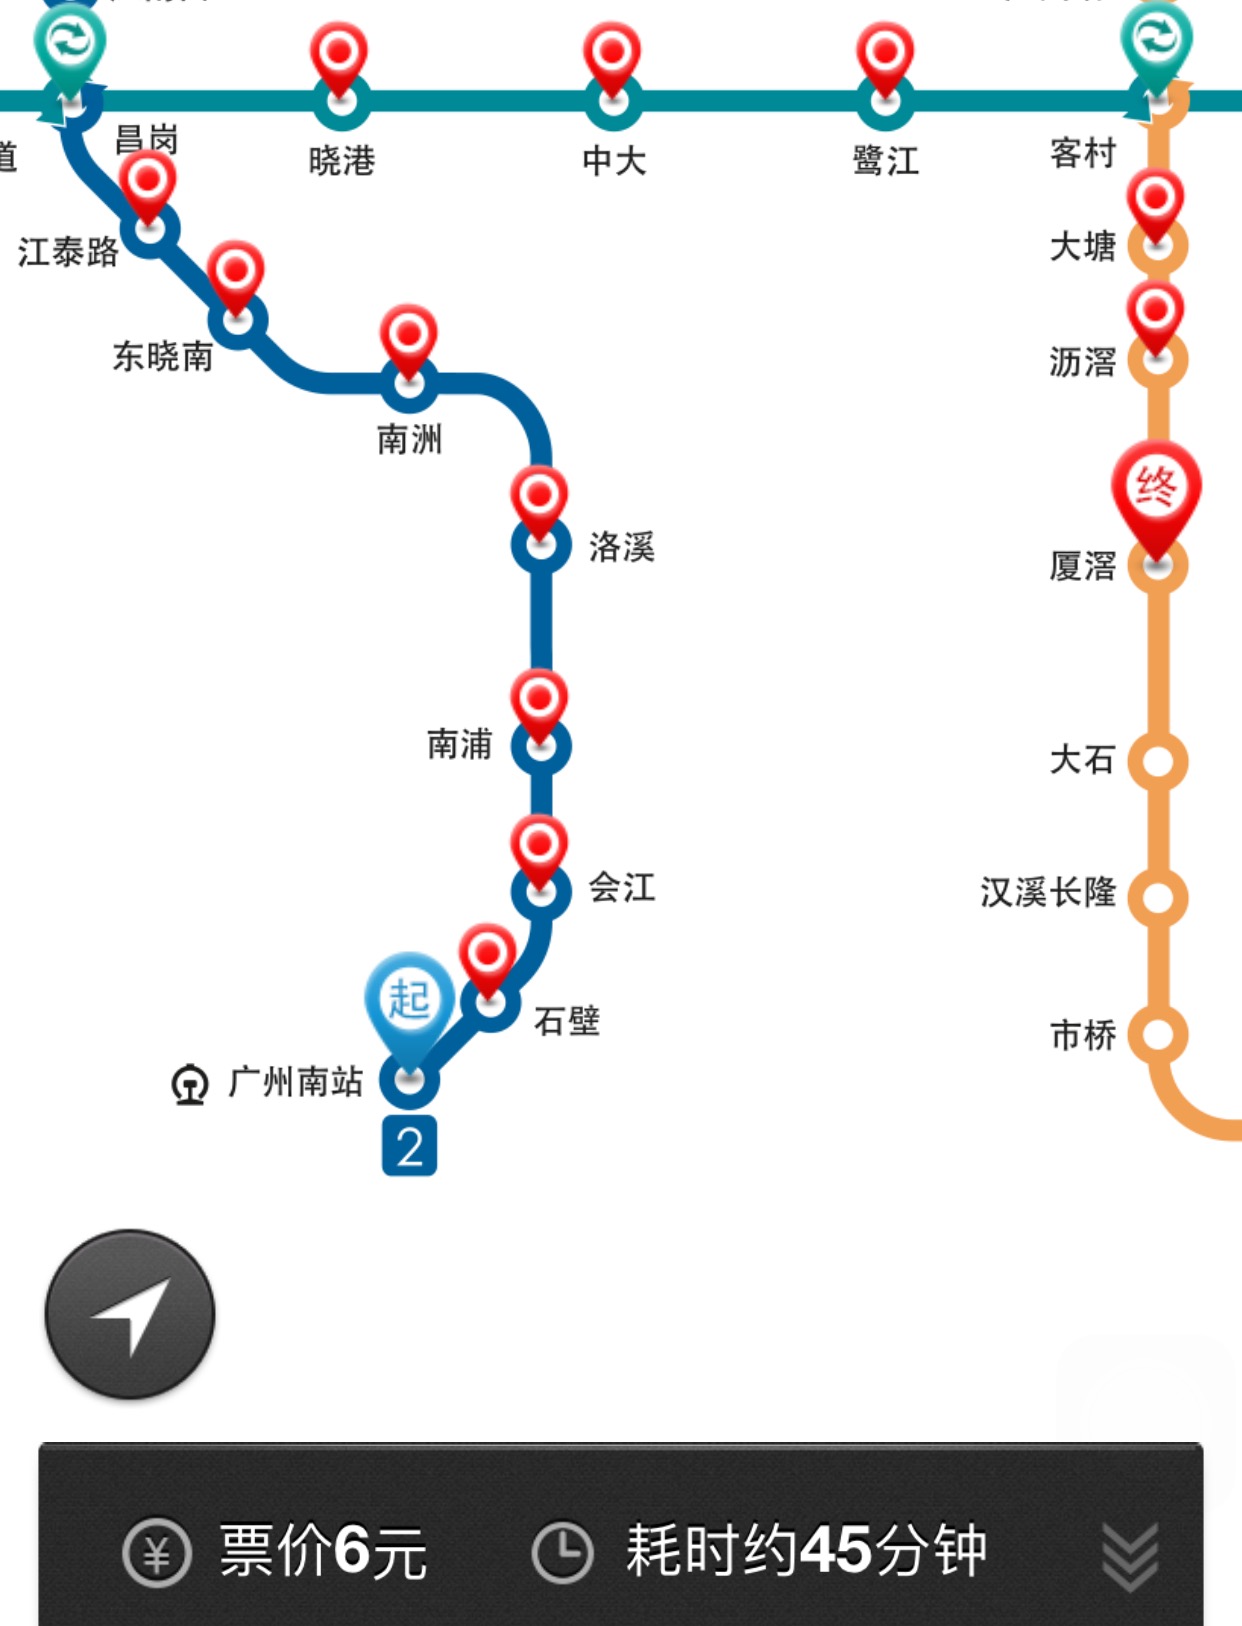 广州地铁2号线所乘坐过的列车 - 哔哩哔哩